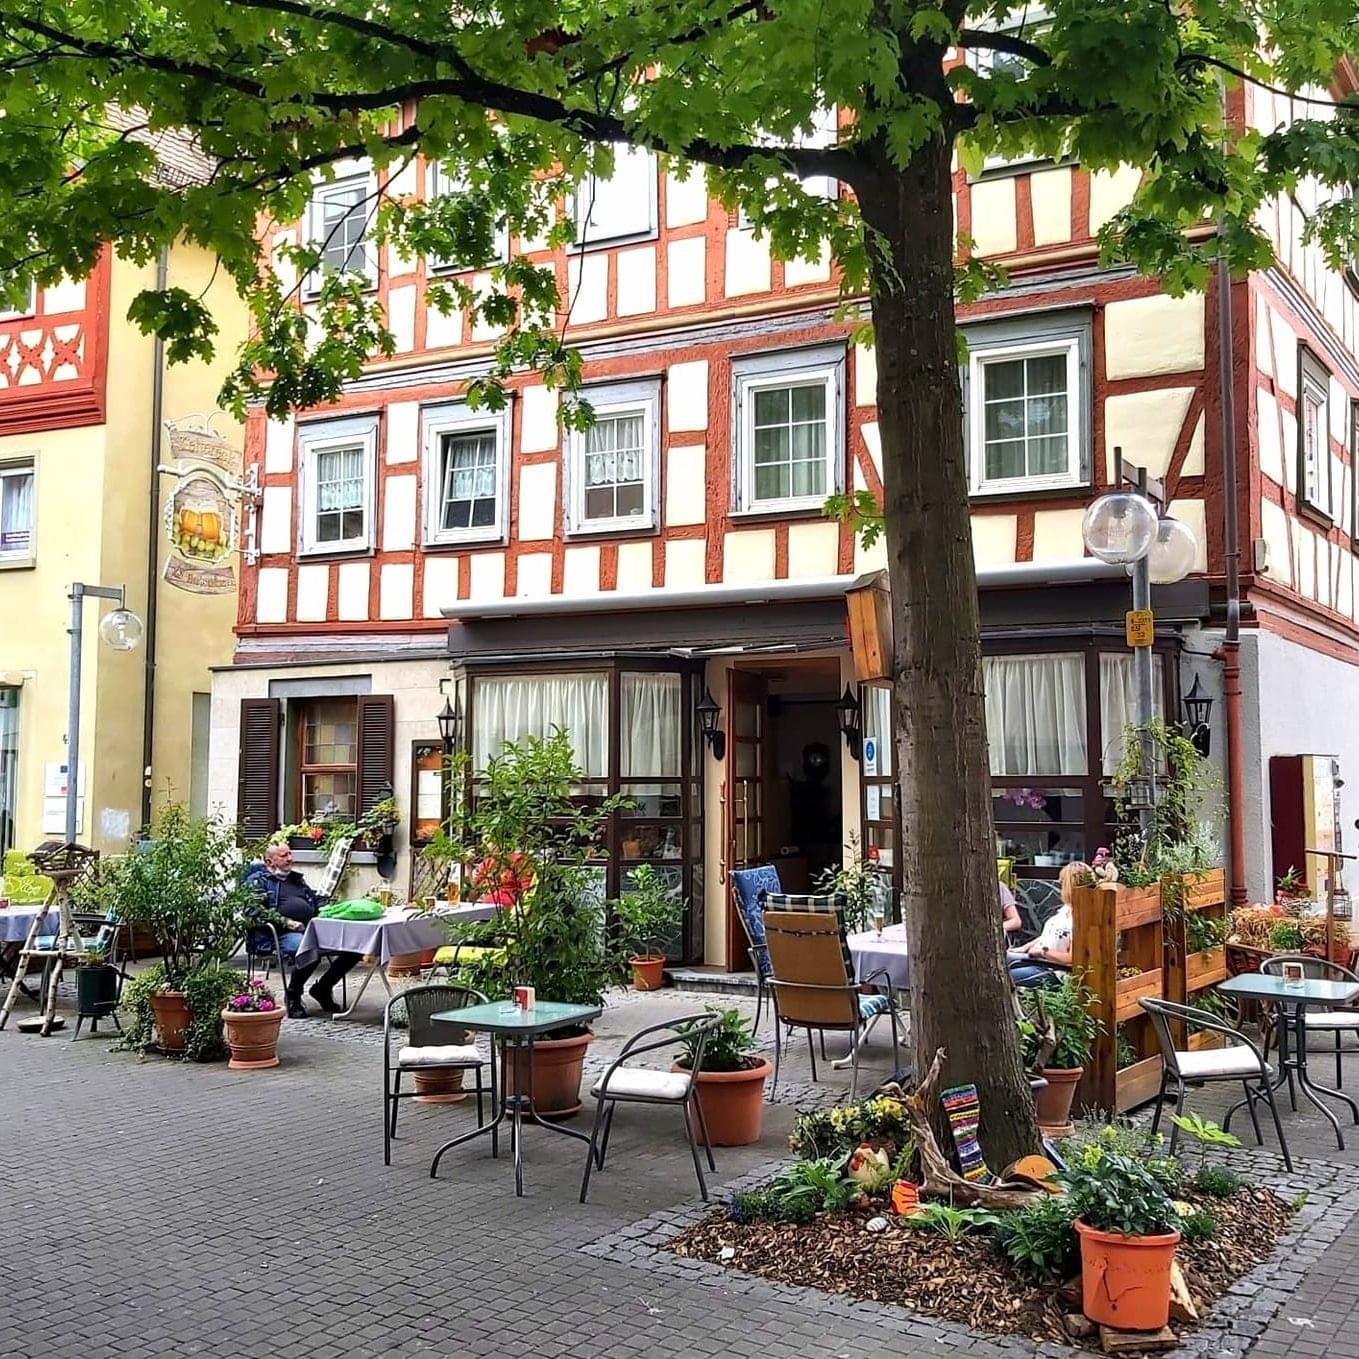 Restaurant "Keltereck" in Künzelsau